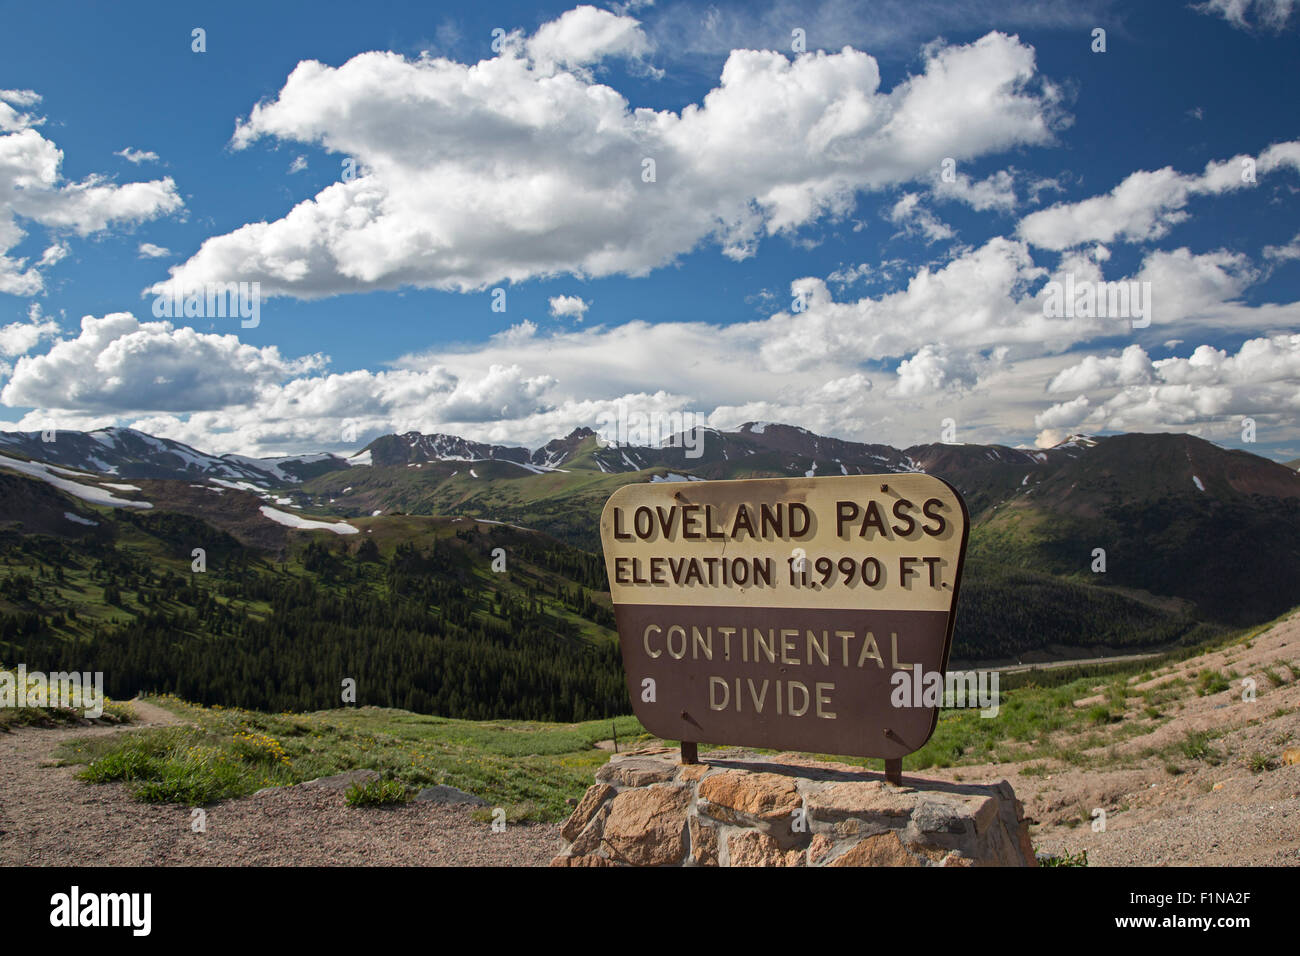 Keystone, Colorado - Loveland Pass auf die kontinentale Wasserscheide in den Rocky Mountains. Stockfoto